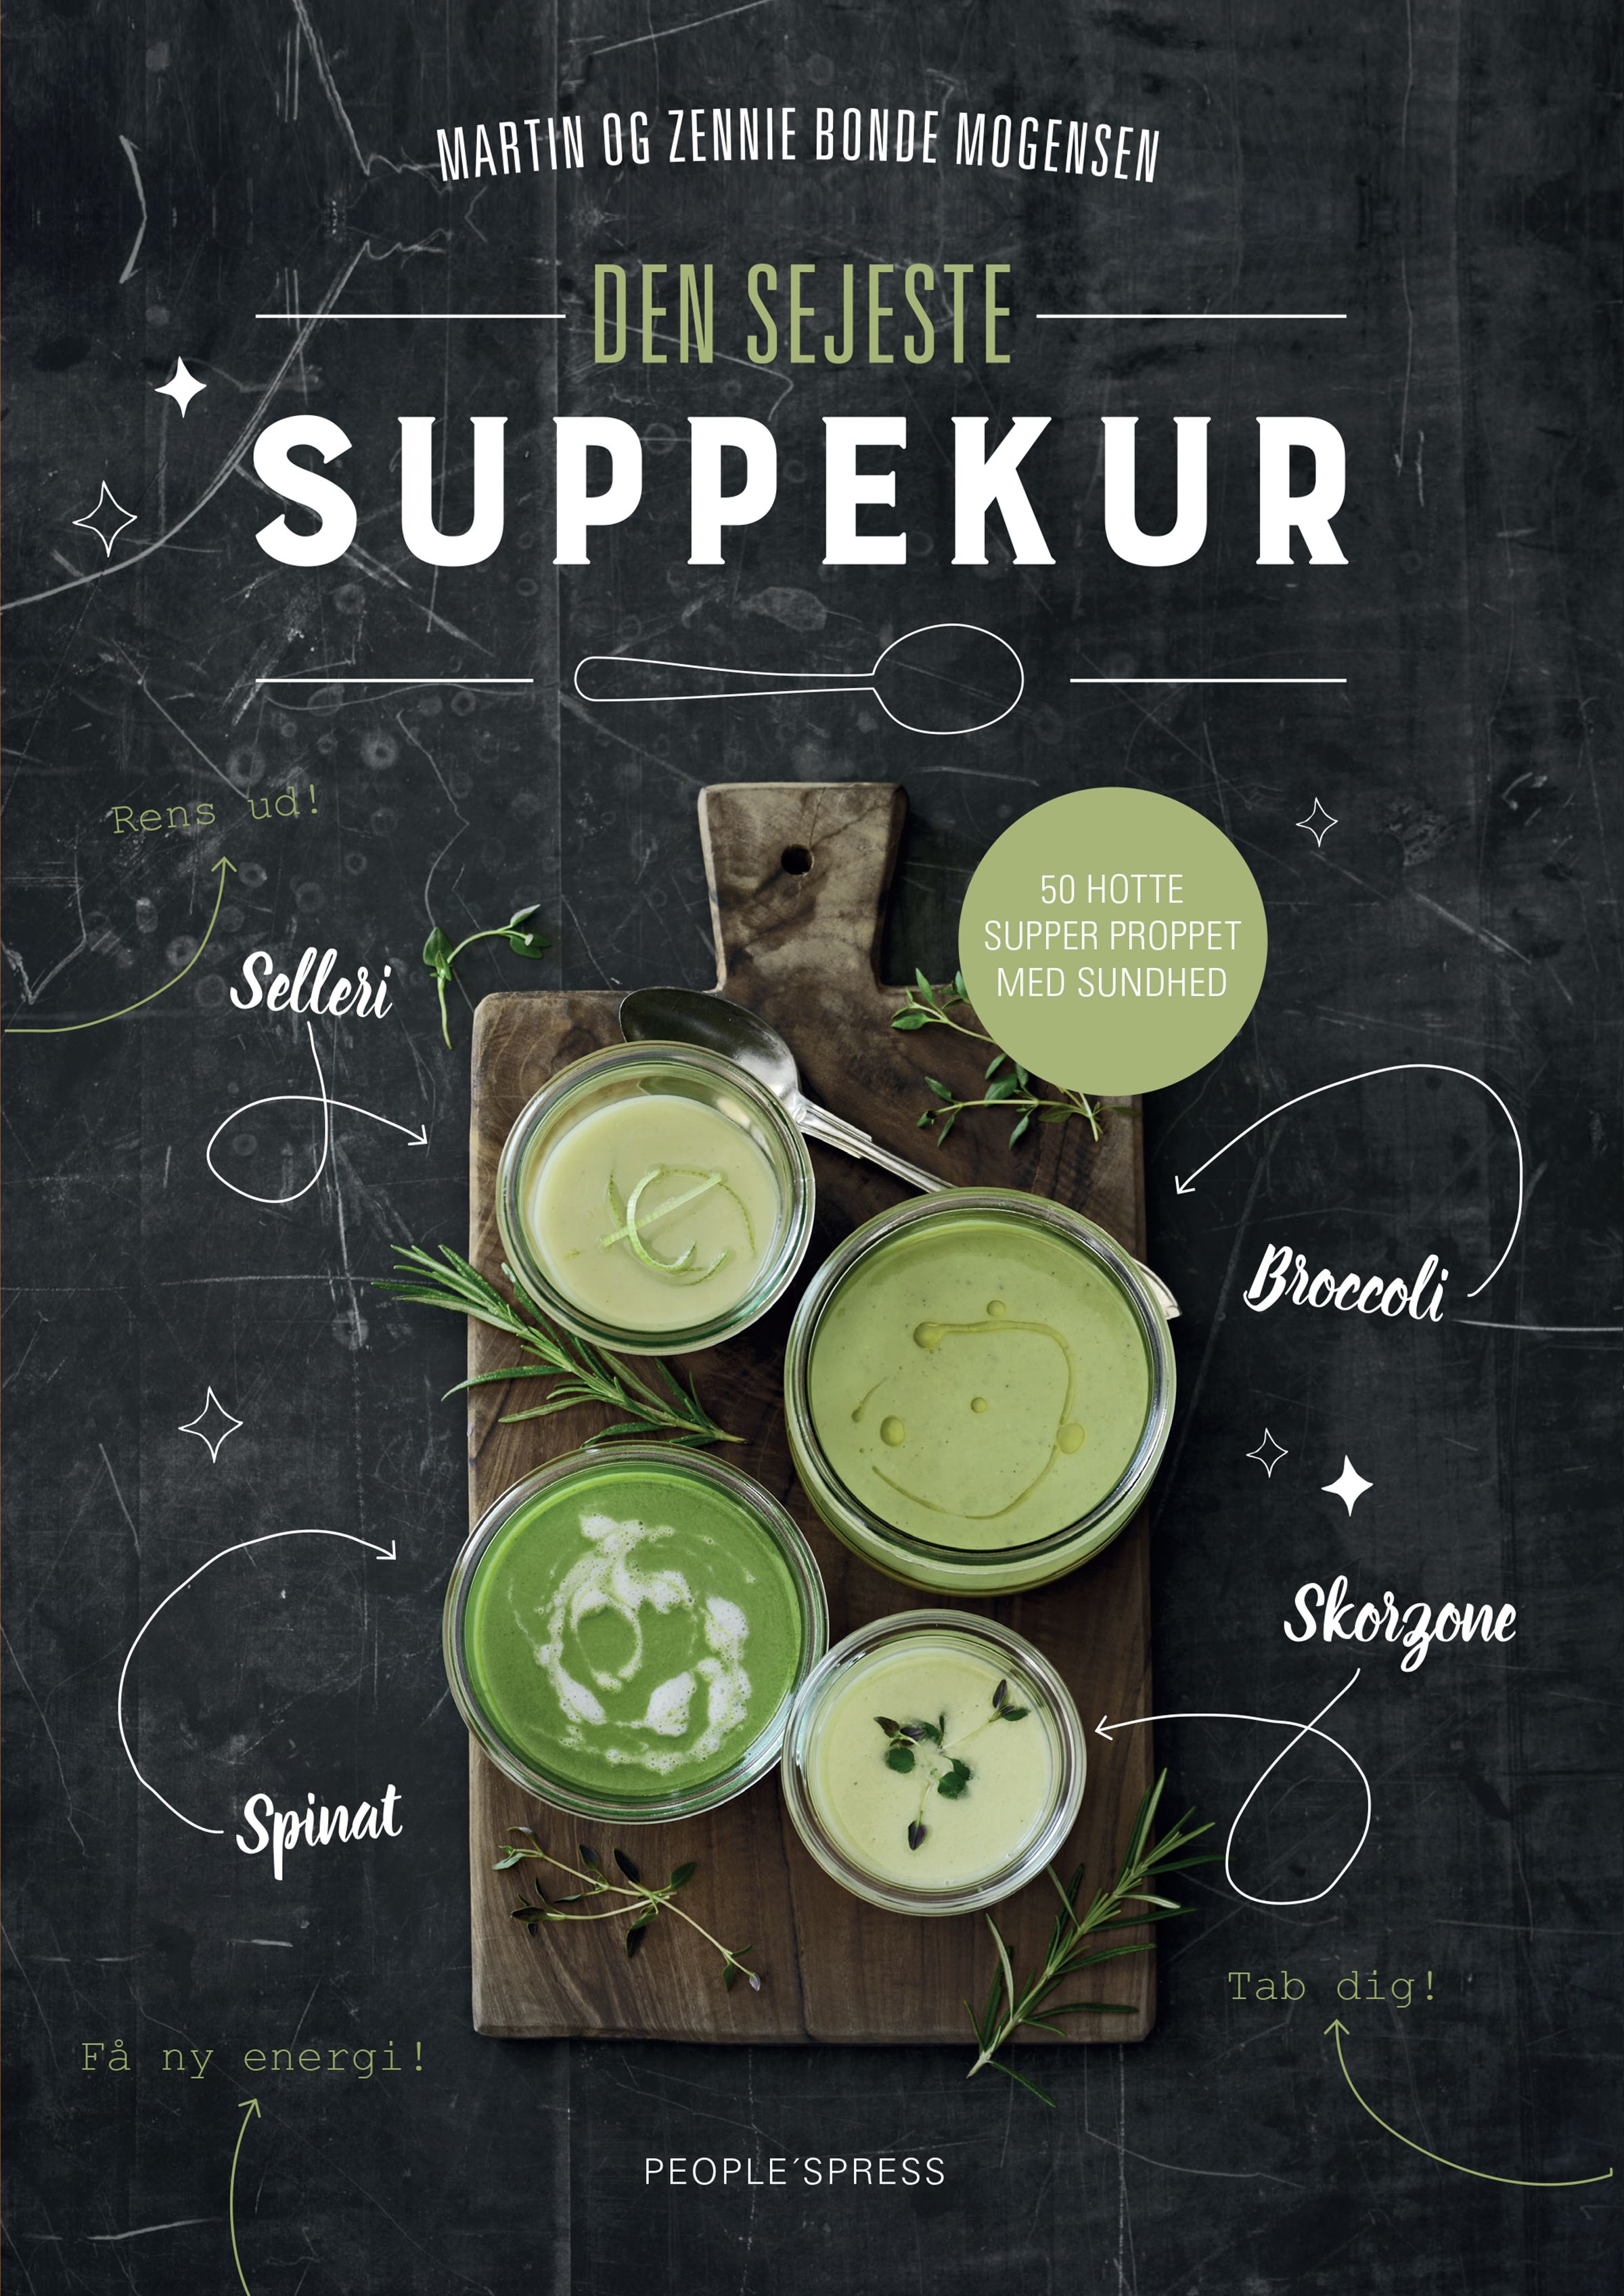 Den sejeste suppekur, e-bog af Martin Bonde Mogensen, Zennie Bonde Mogensen